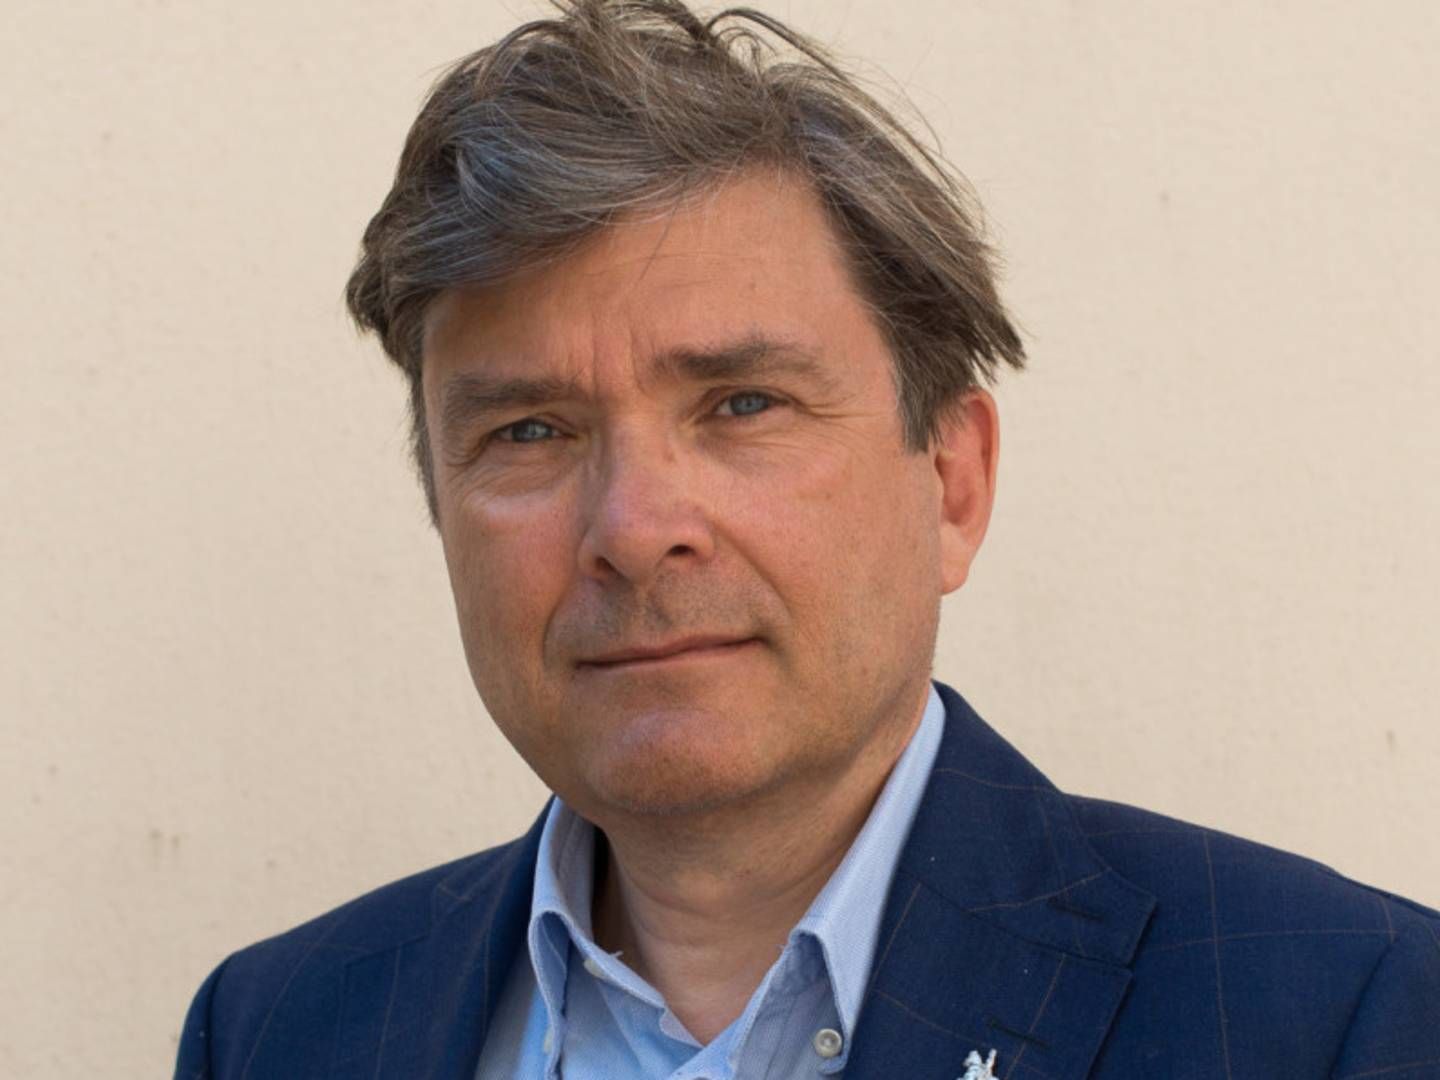 Øyvind Isachsen has been the CEO of NORWEA for 14 years. | Photo: PR / Norwea